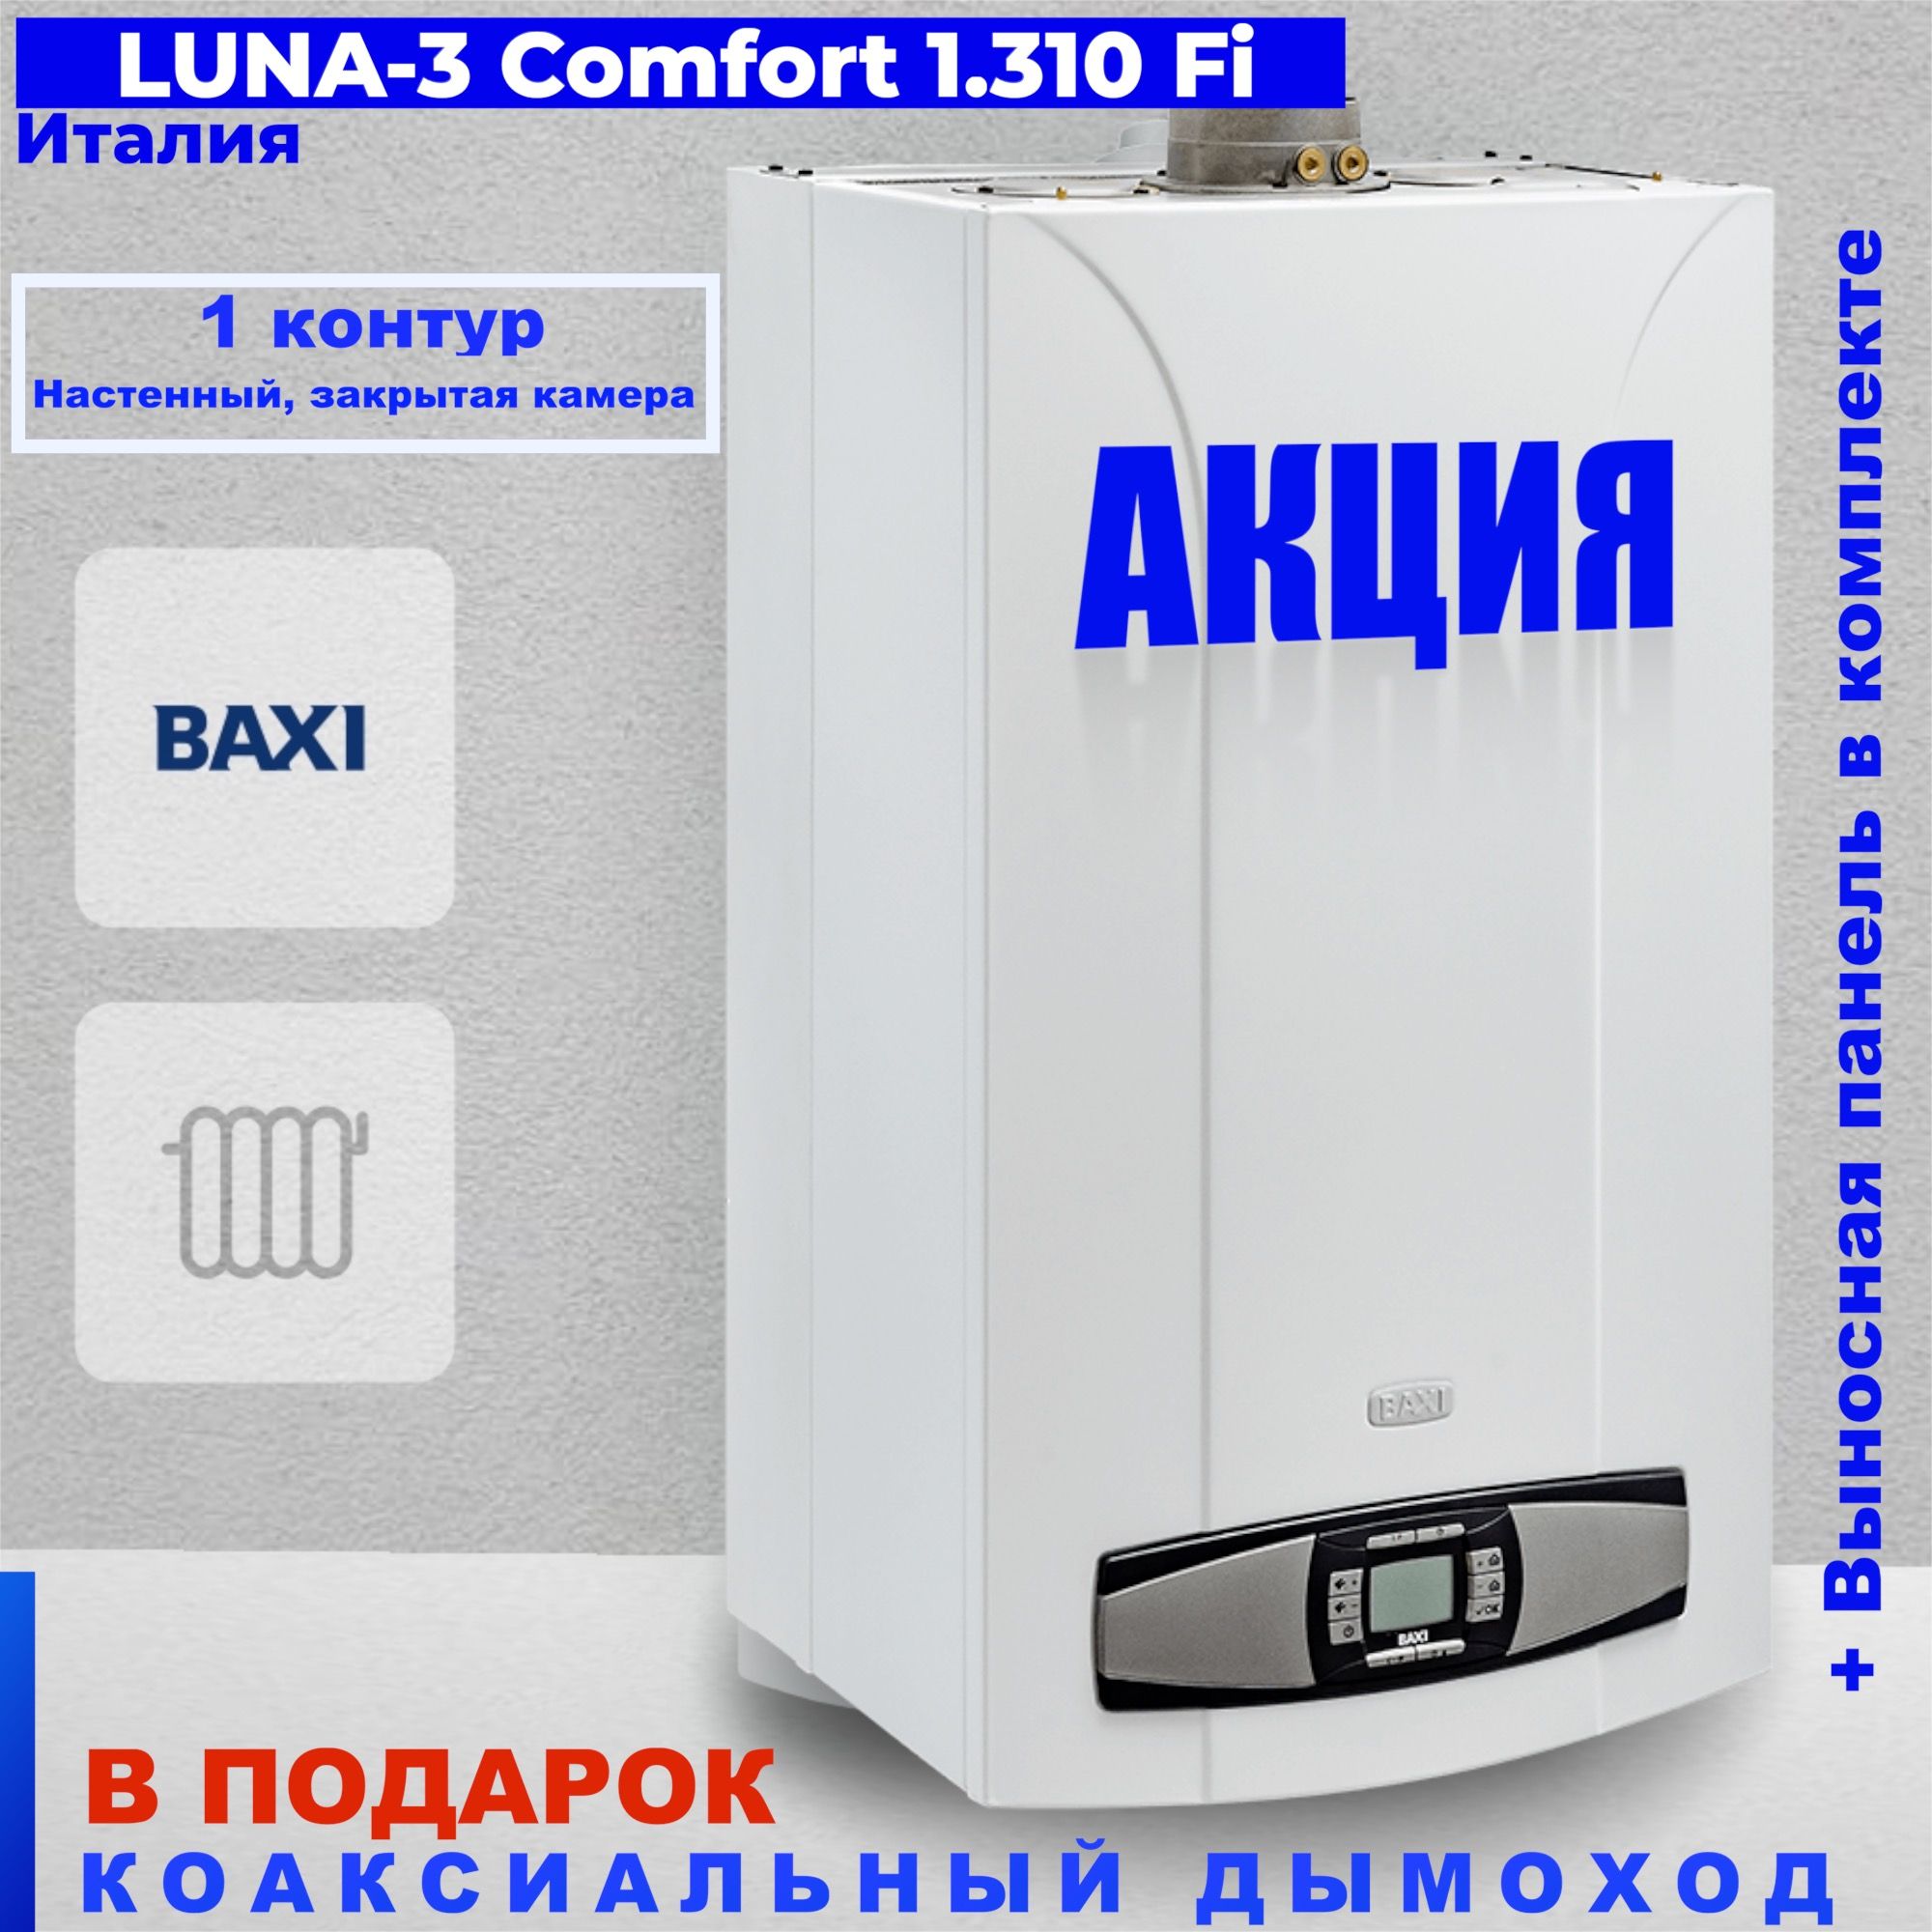 Baxi Luna-3 Comfort 310 Fi корпус насос. Котел наст.ГАЗ.Baxi Luna 3.310Fi. Baxi Luna-3 1.310 Fi. Подключить пульт Luna 3 Comfort 1.310 Fi.